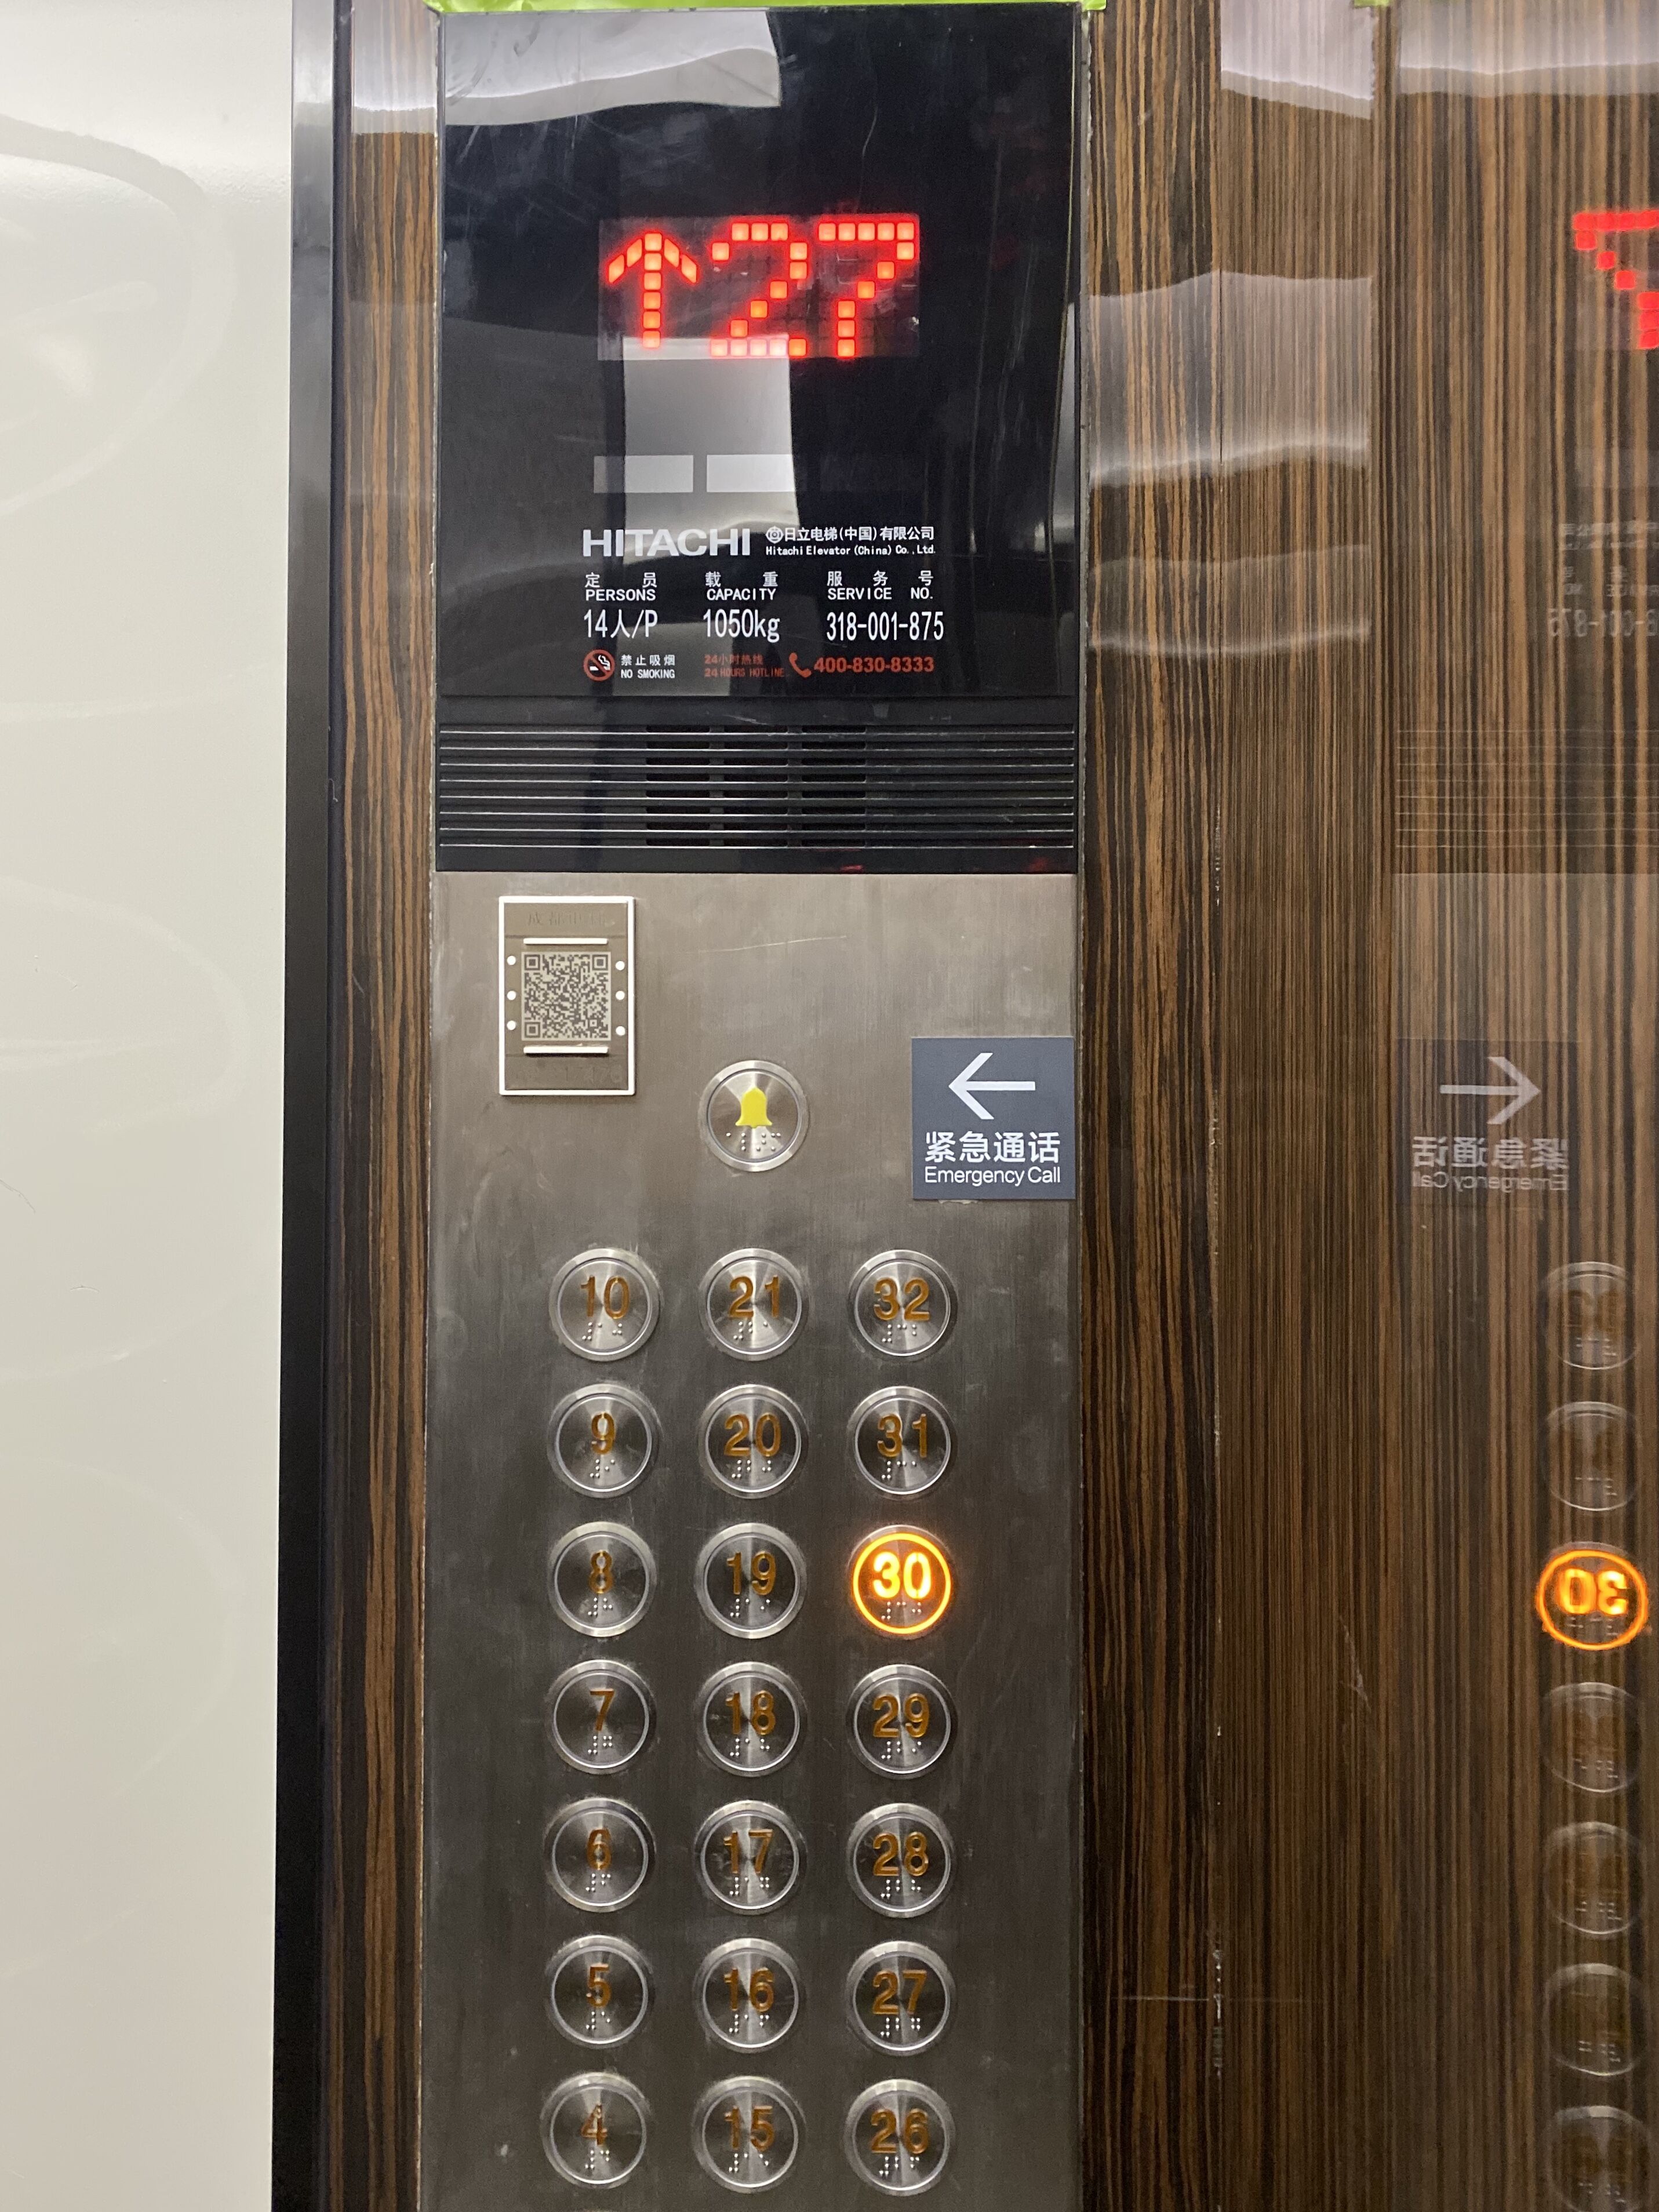 一线品牌日立,电梯轿厢内部还选用了现代金属与古典木质相间的花纹